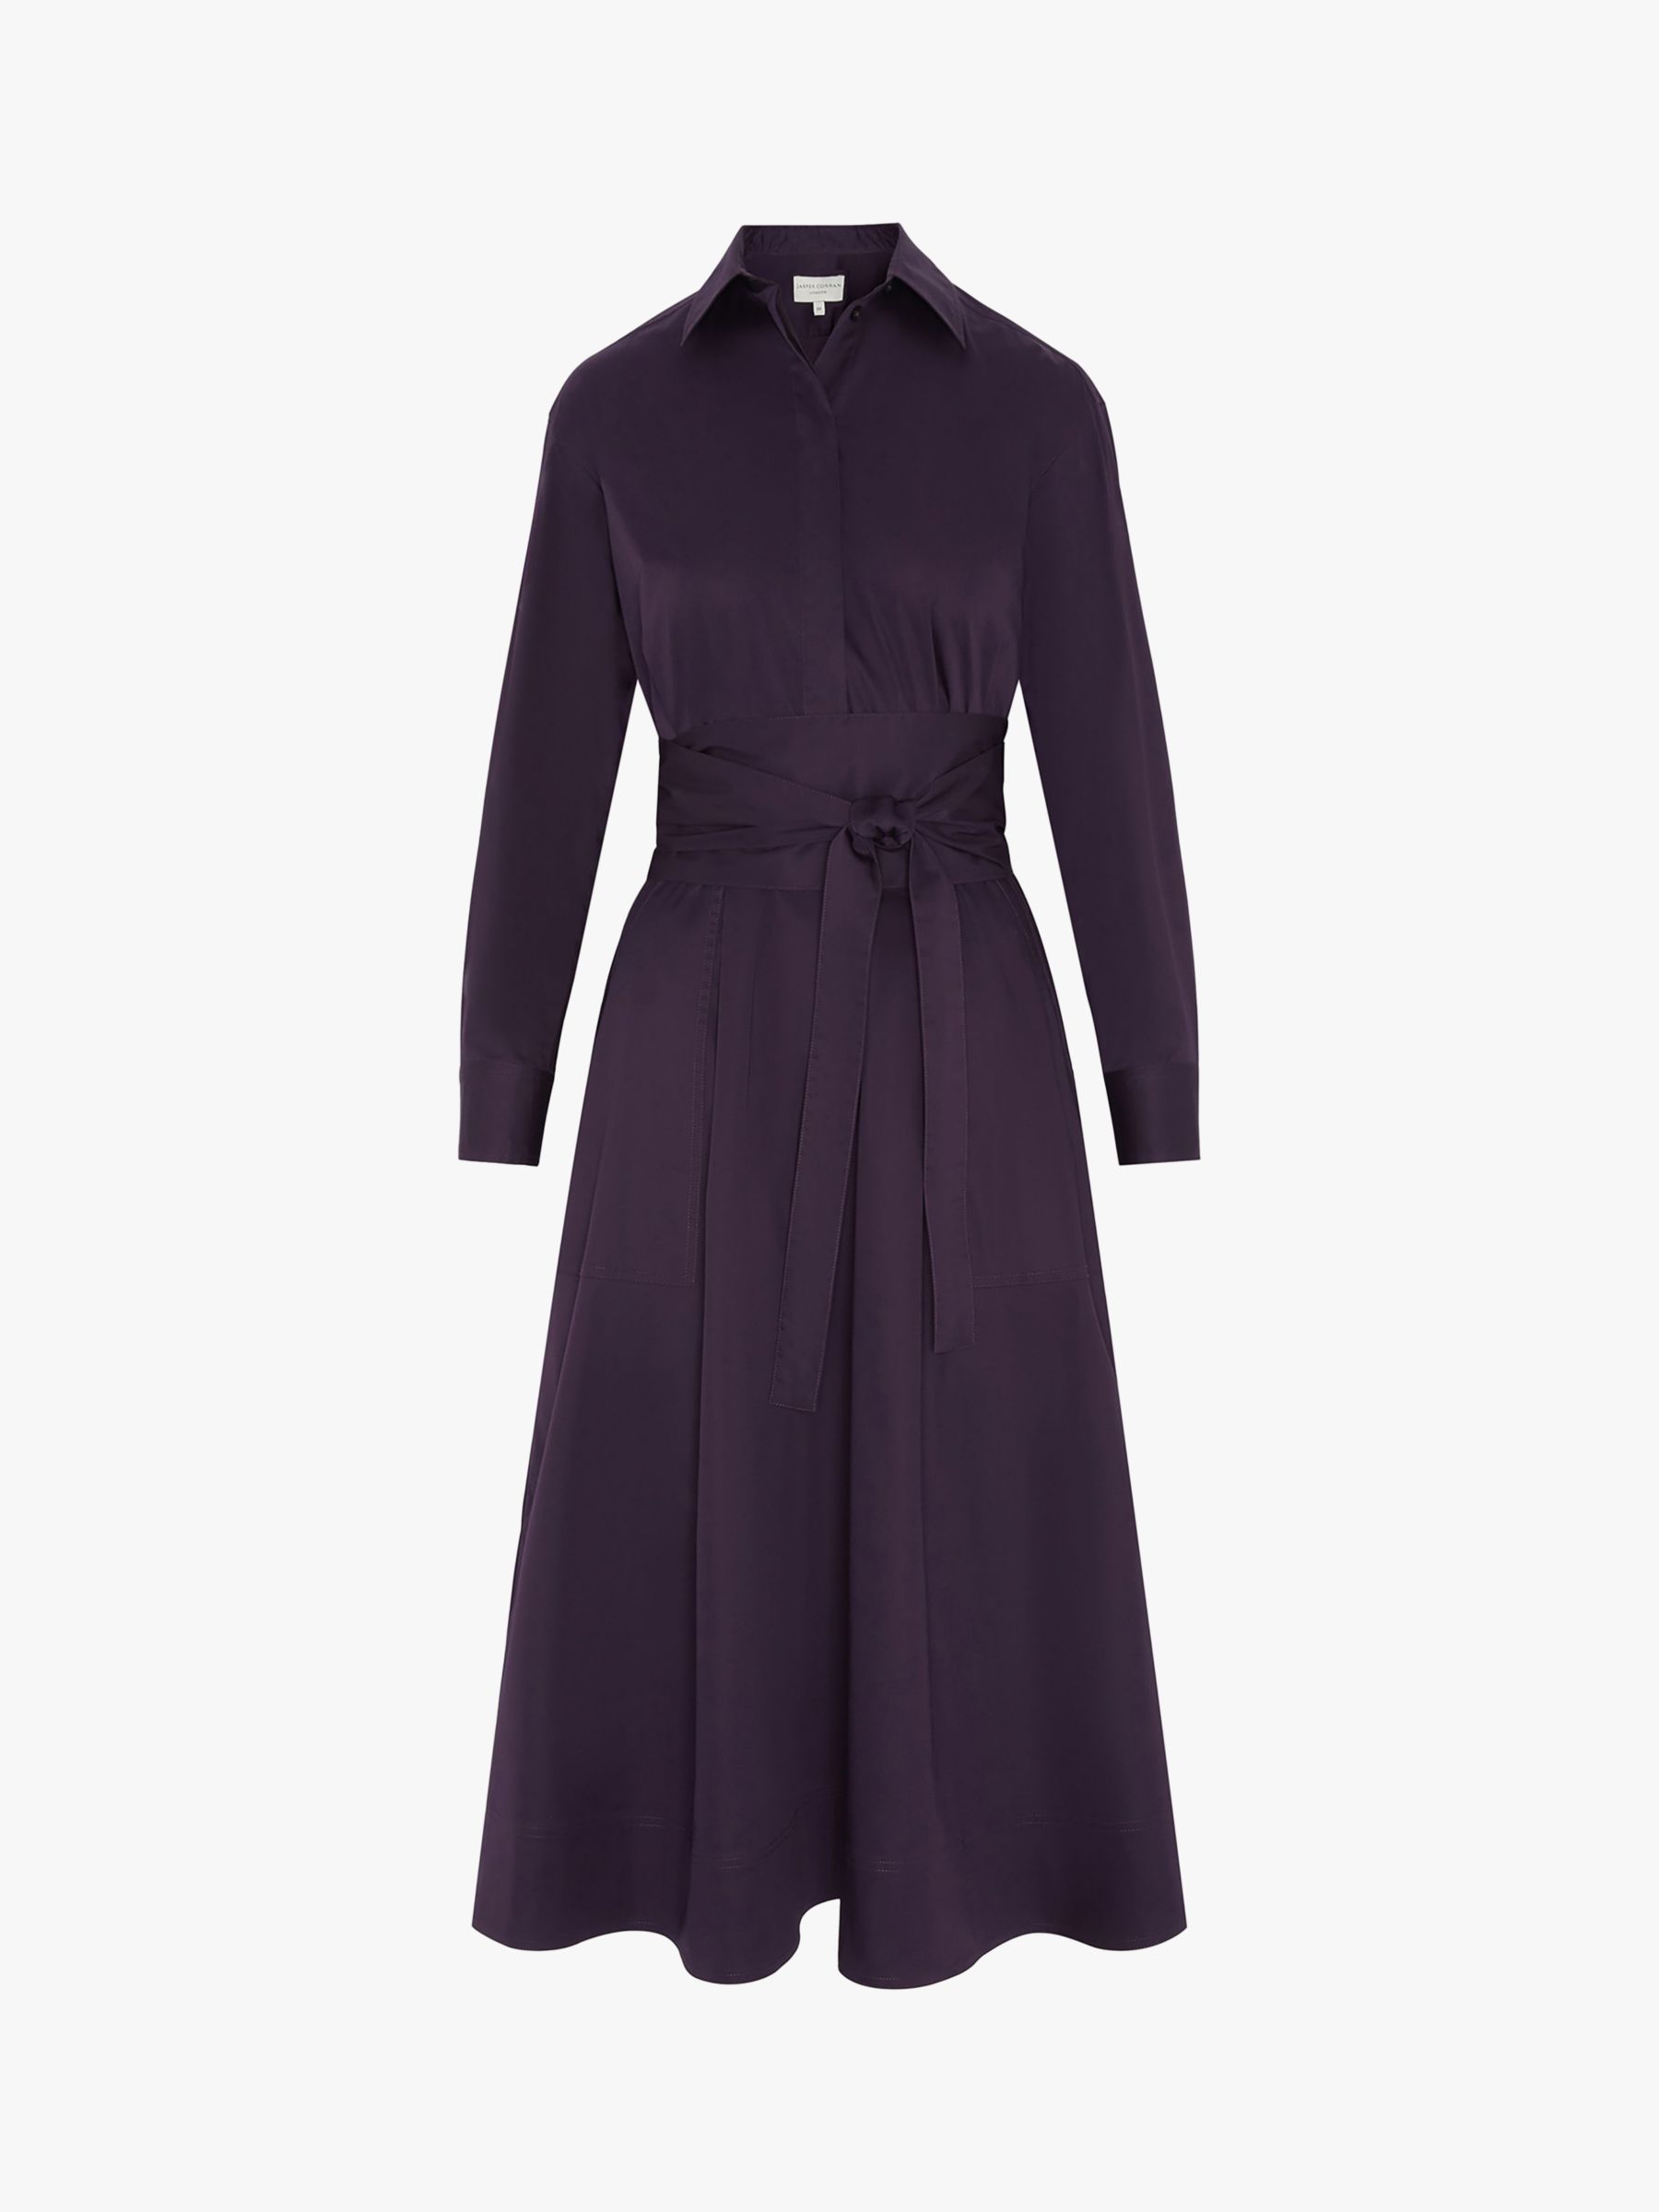 Jasper Conran Blythe Midi Shirt Dress, Purple, 8